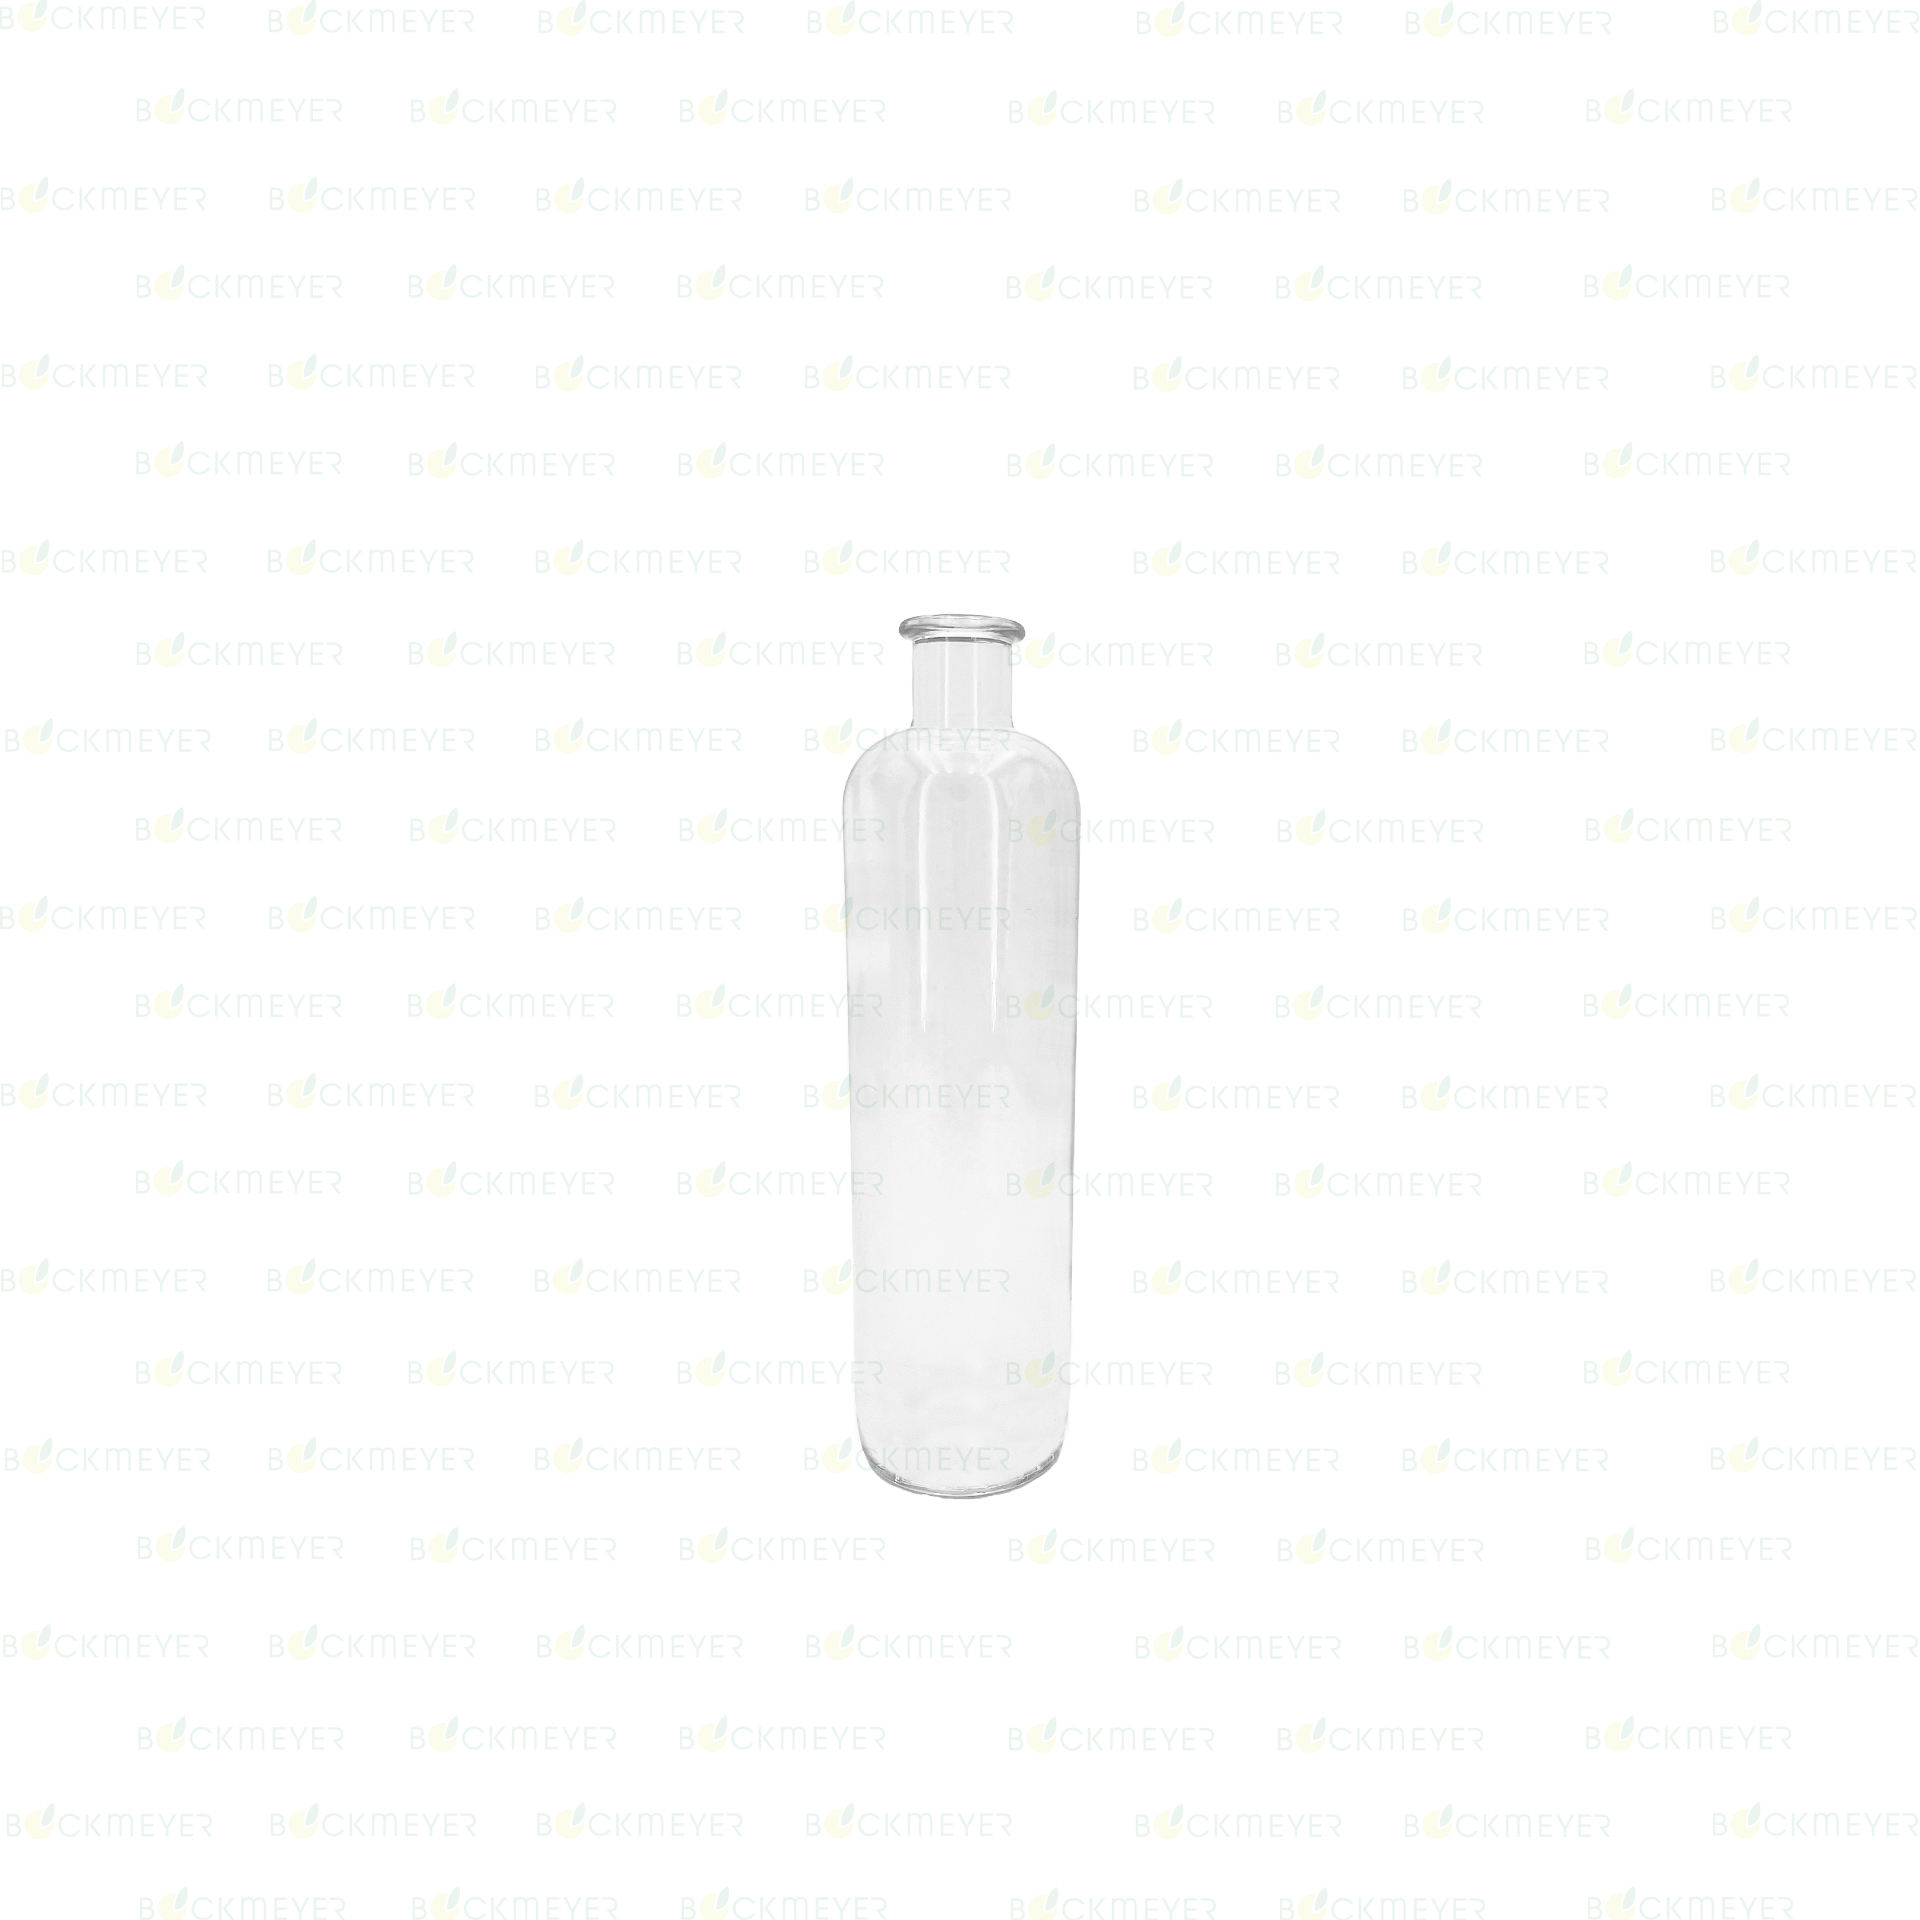 Krugflasche 0,5 Liter, weiß (OHNE VERSCHLUSS)